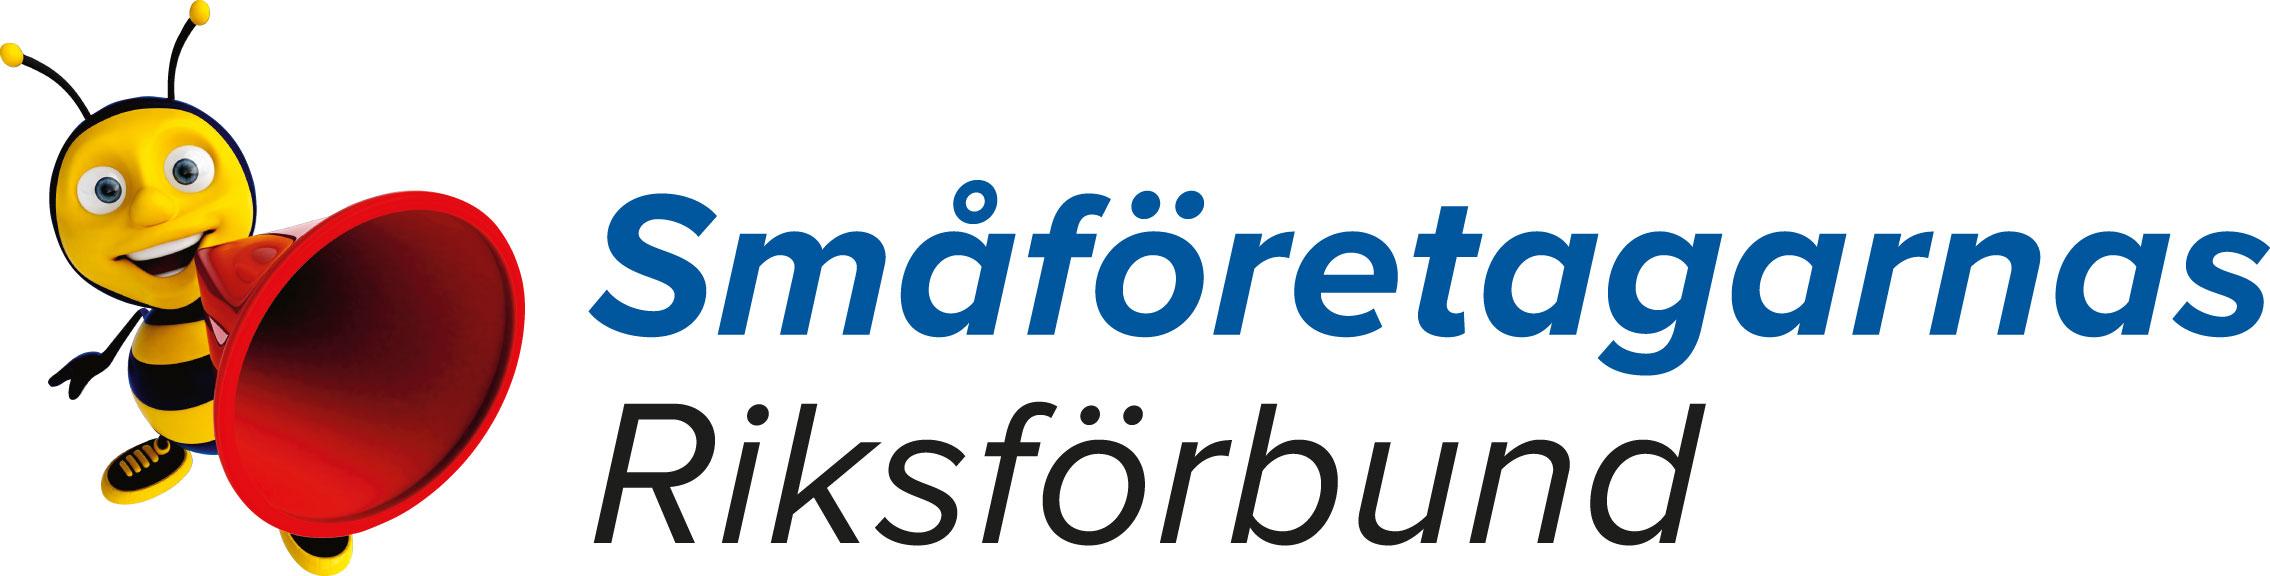 Småföretagarnas Riksförbund logotyp